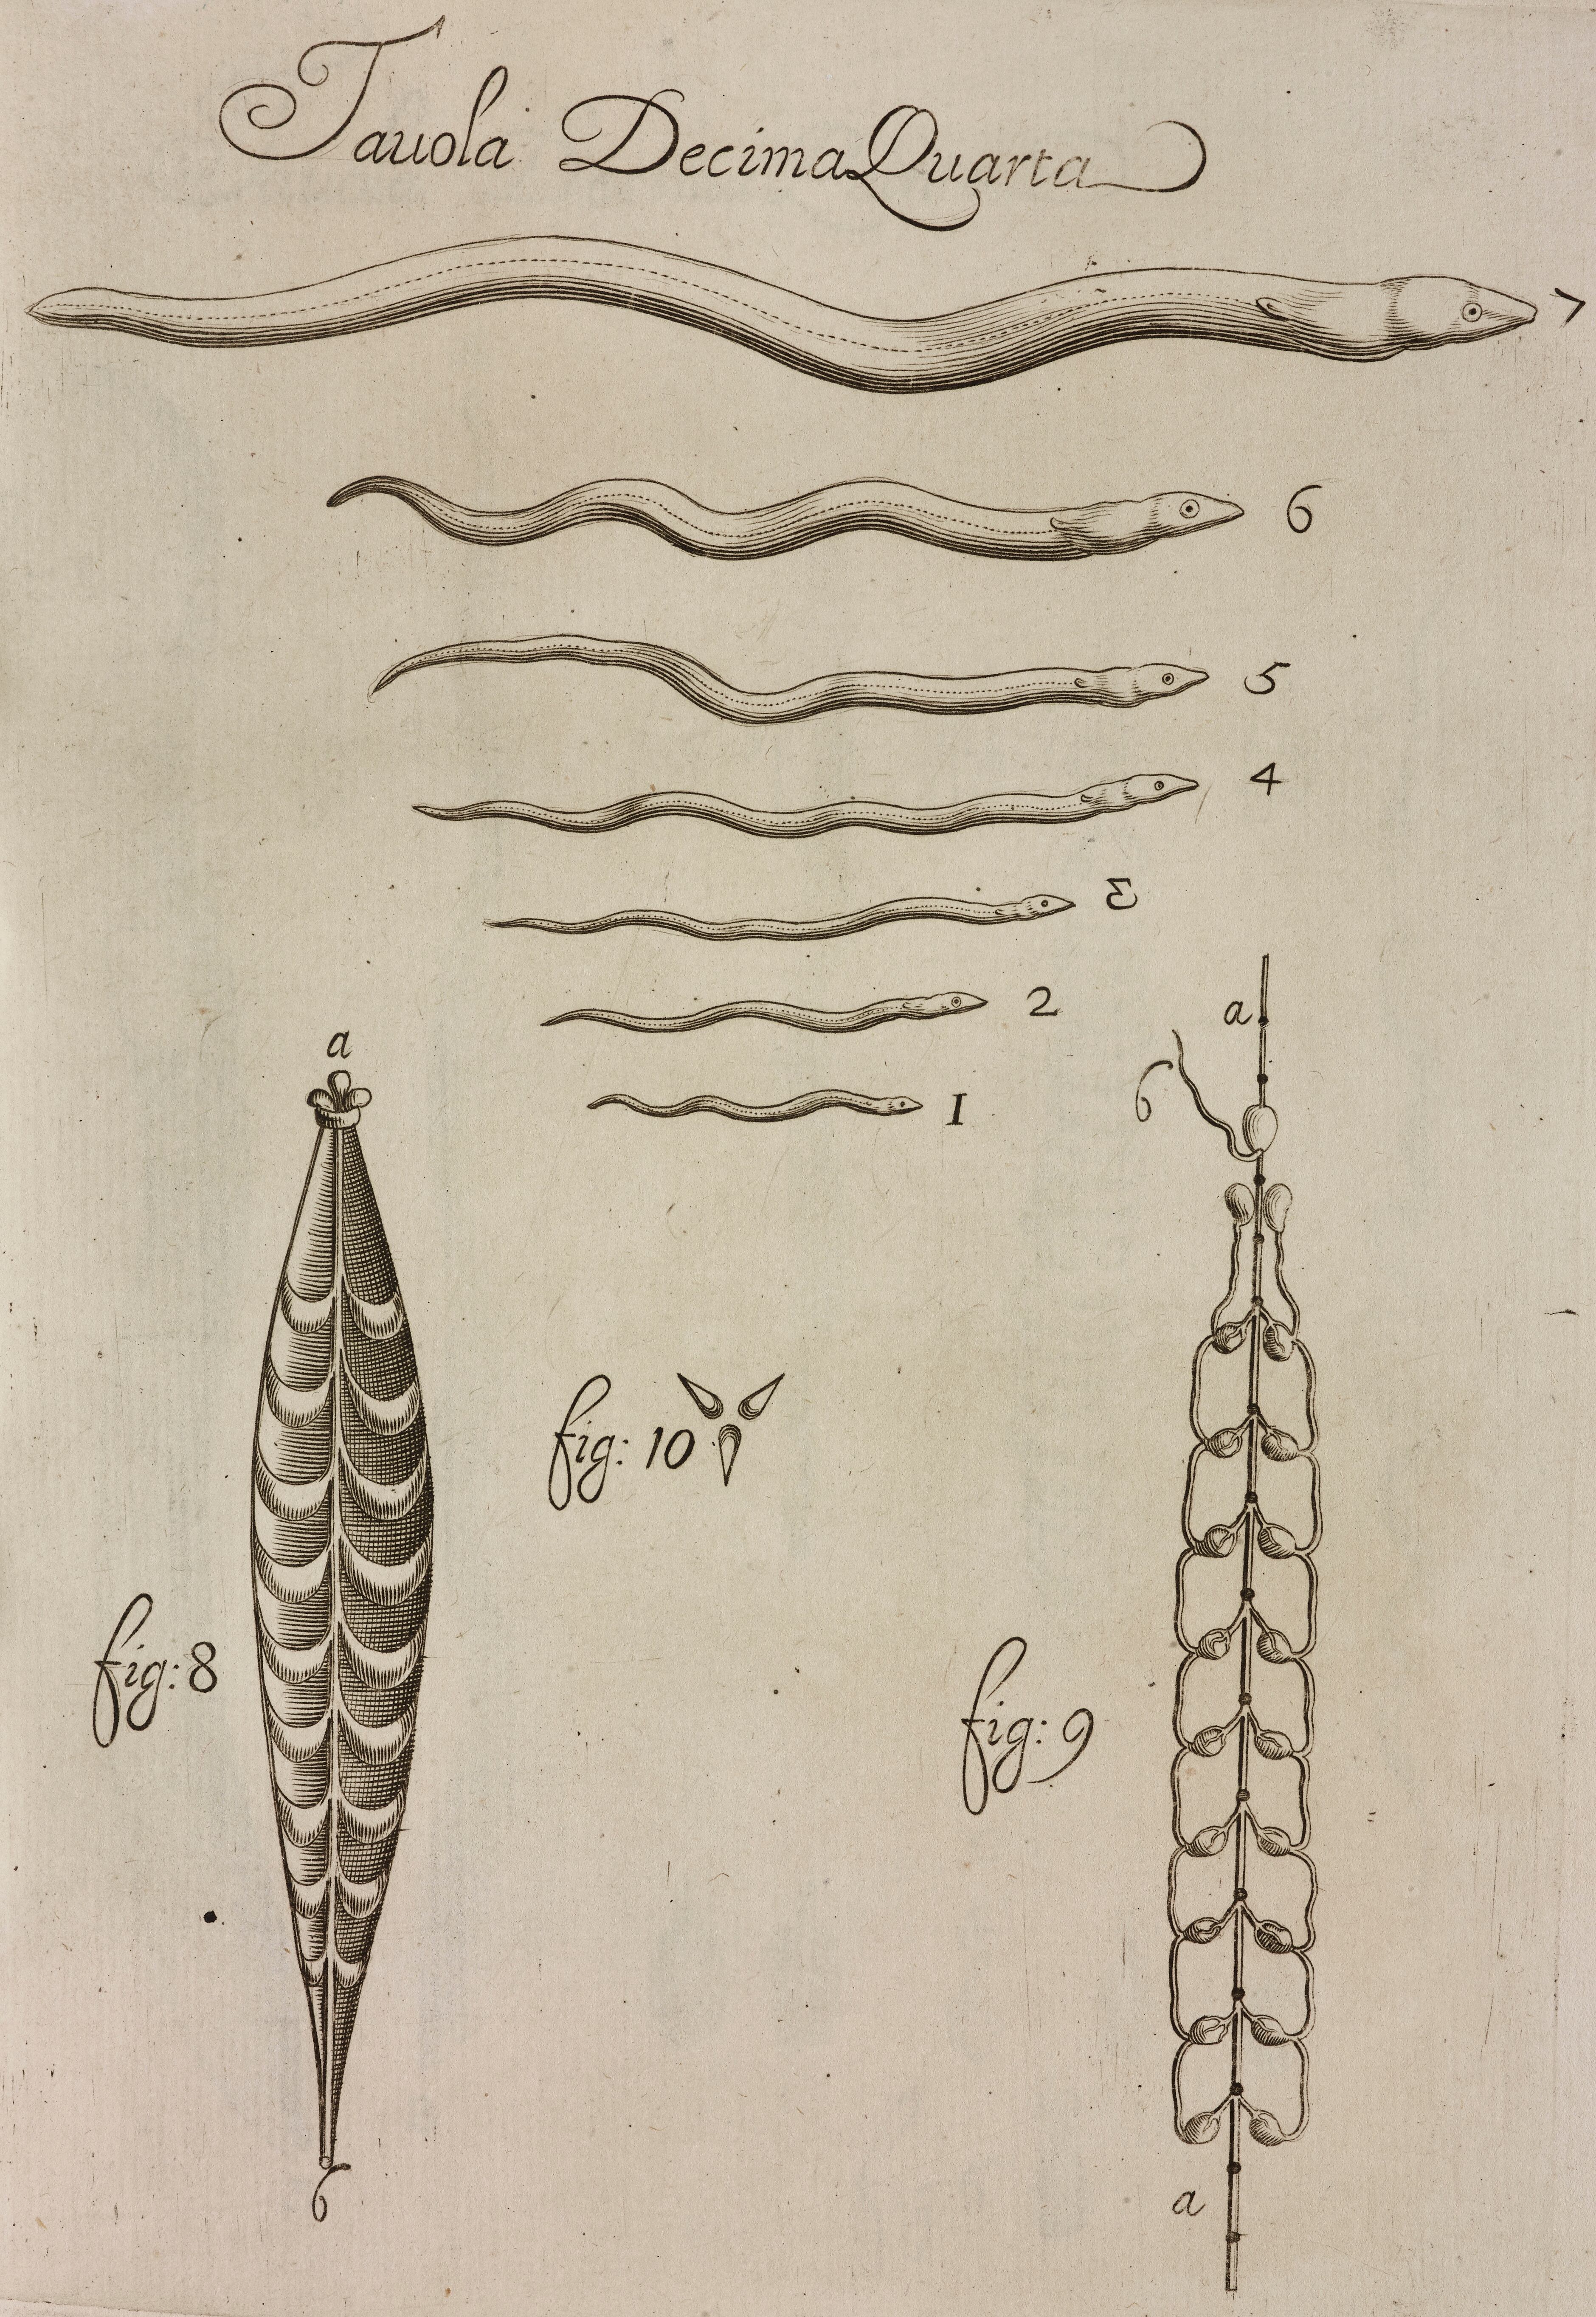 Del 1 al 7, ilustración de las fases de crecimiento de la anguila. Gráfico realizado por Francesco Redi en 1684.